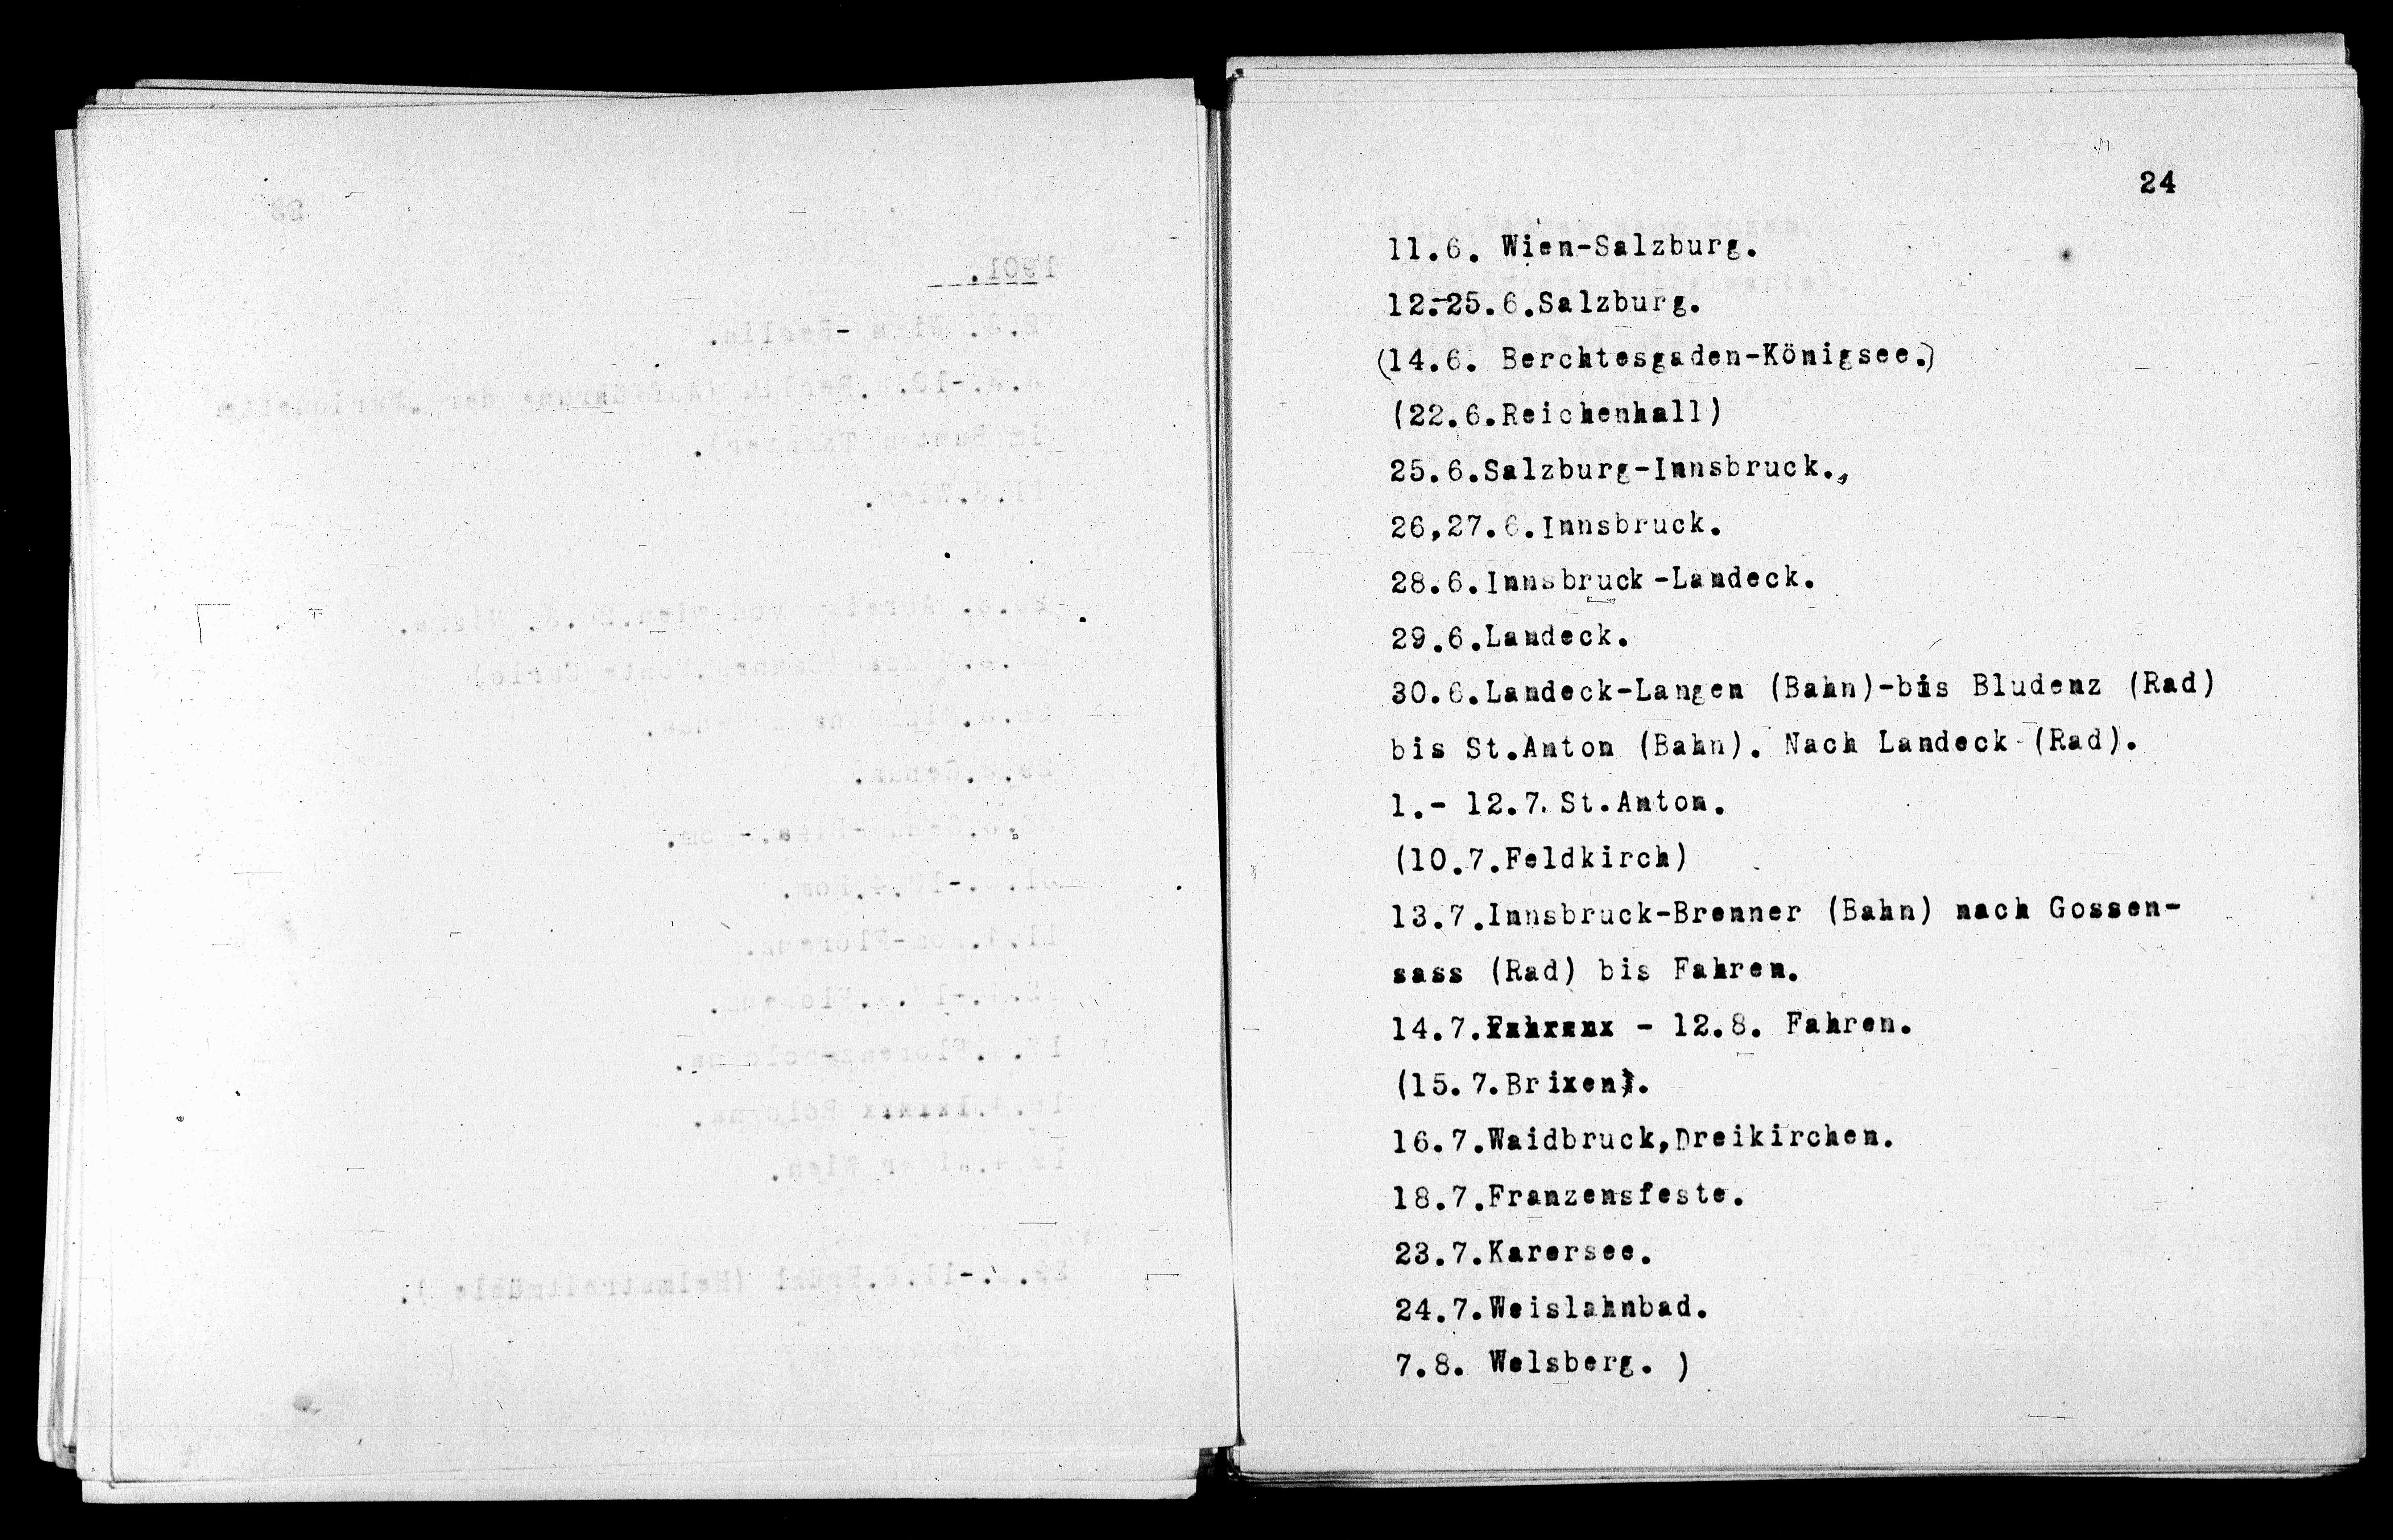 Vorschaubild für Verzeichnis unternommener Reisen 1867-1927, Seite 24